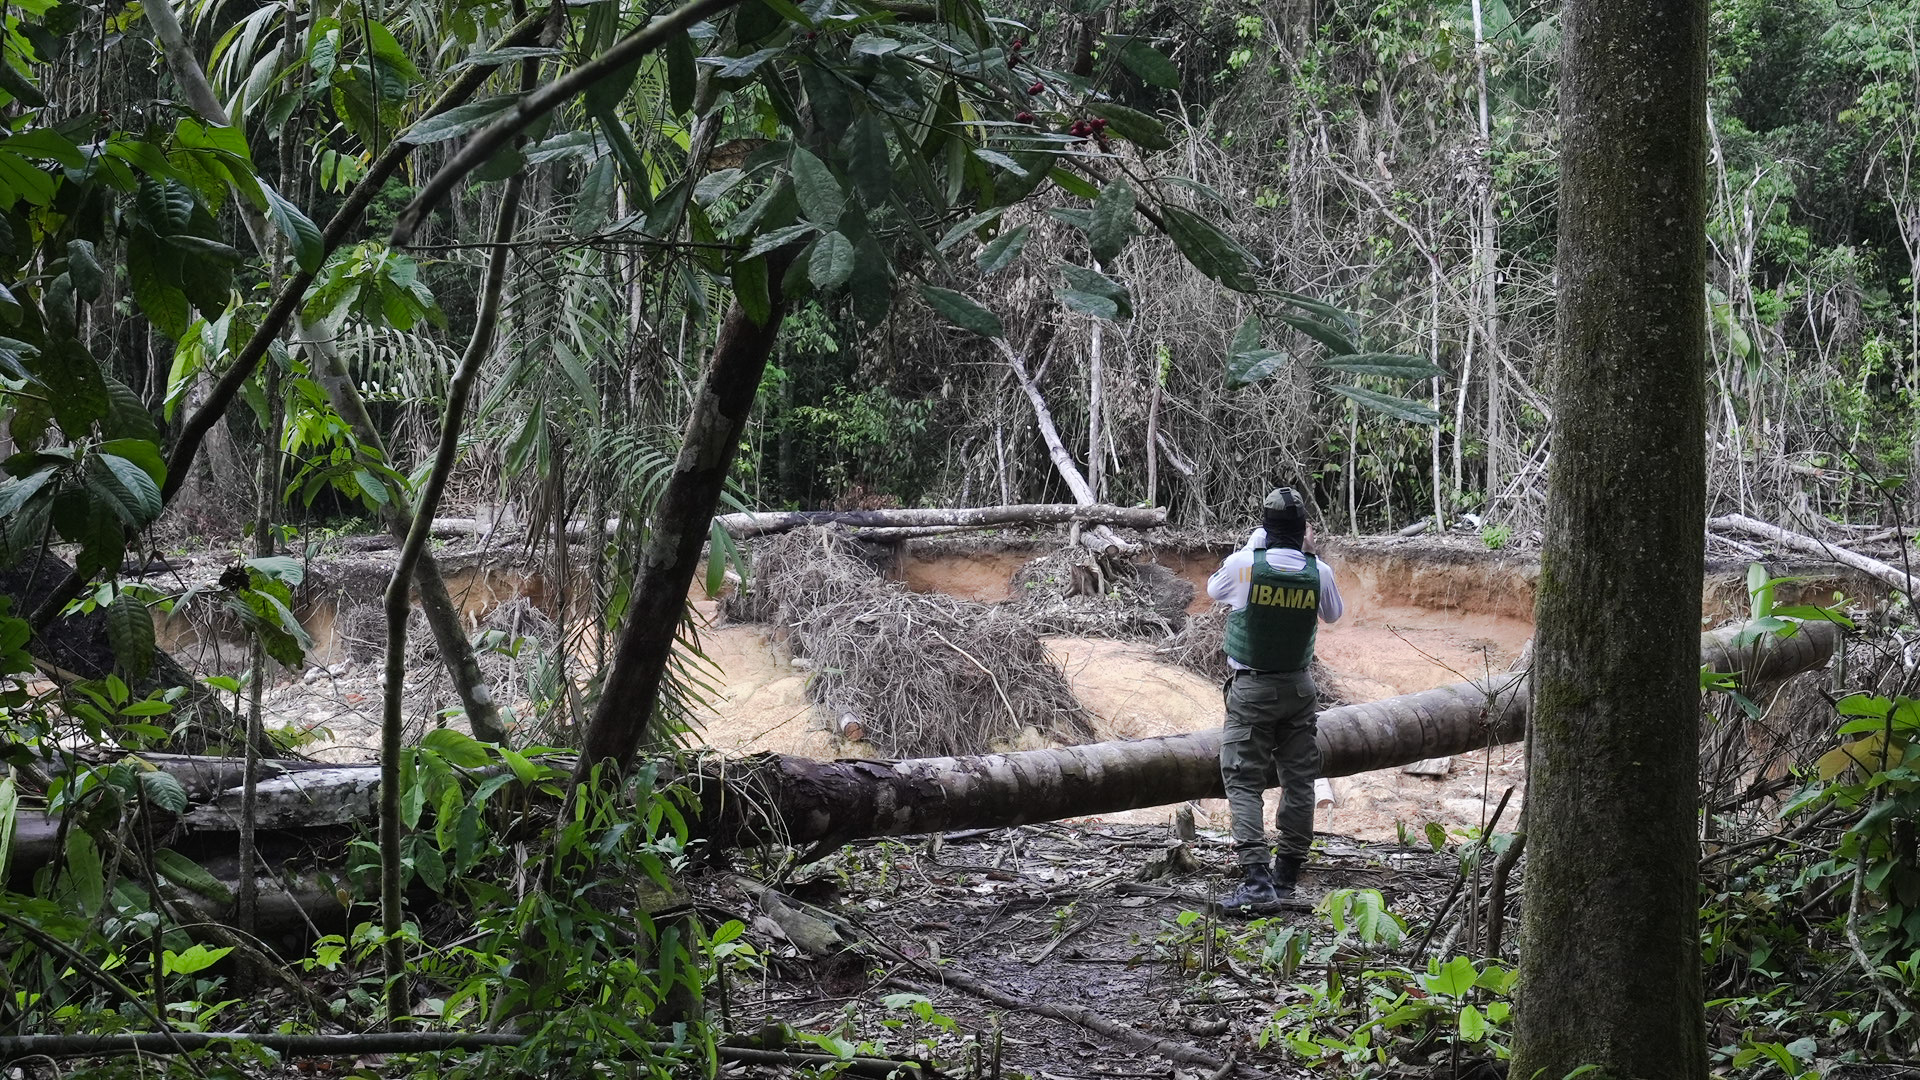 Pedidos de pesquisa e mineração em terras Yanomami são indeferidos